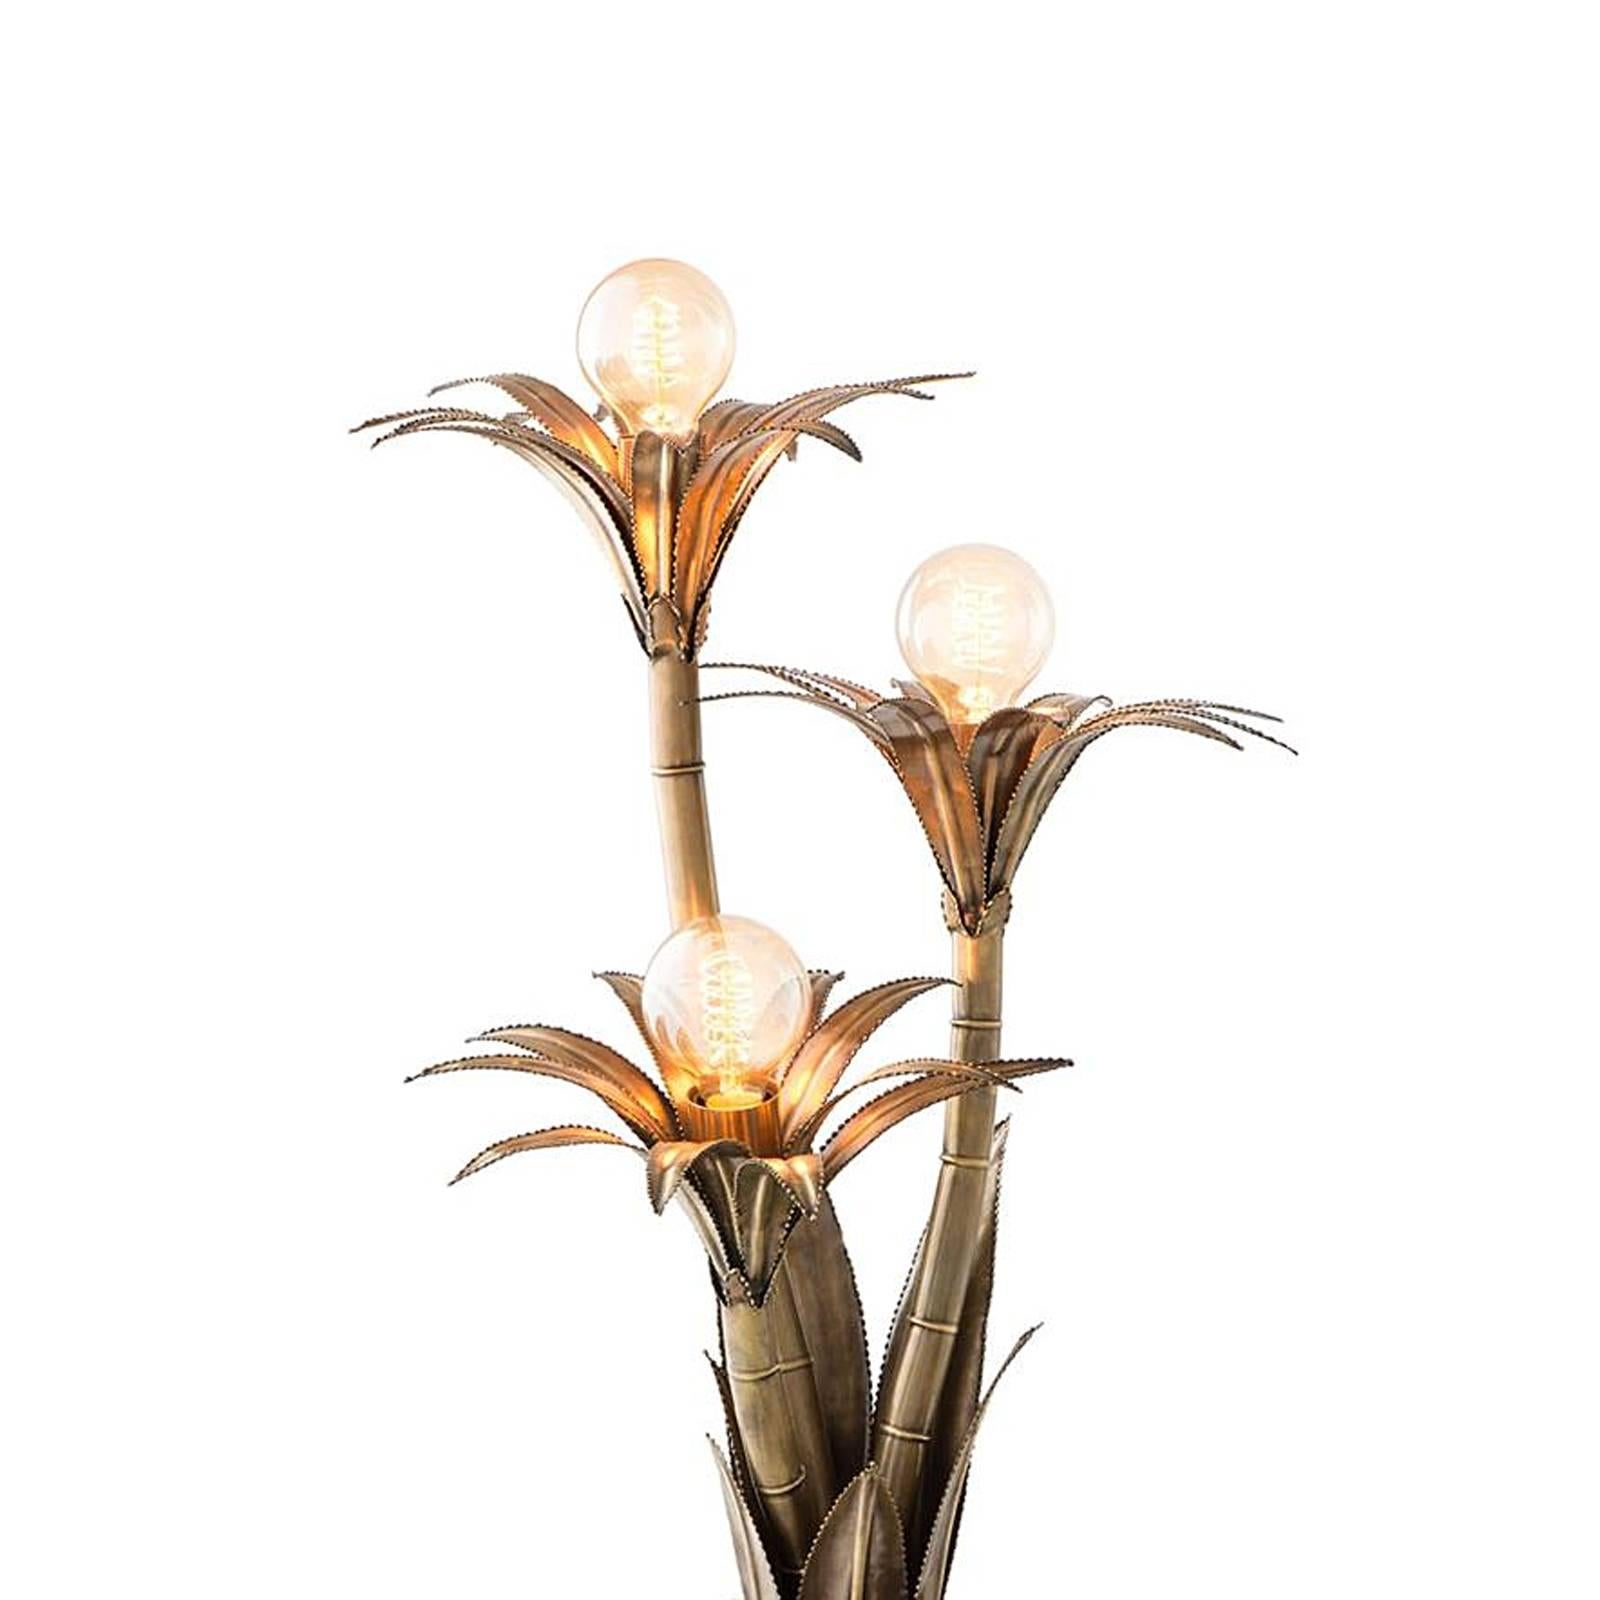 Lampe de table fleurs de palmier en finition laiton vintage.
Forme en laiton martelé à la main. Sur socle noir.
